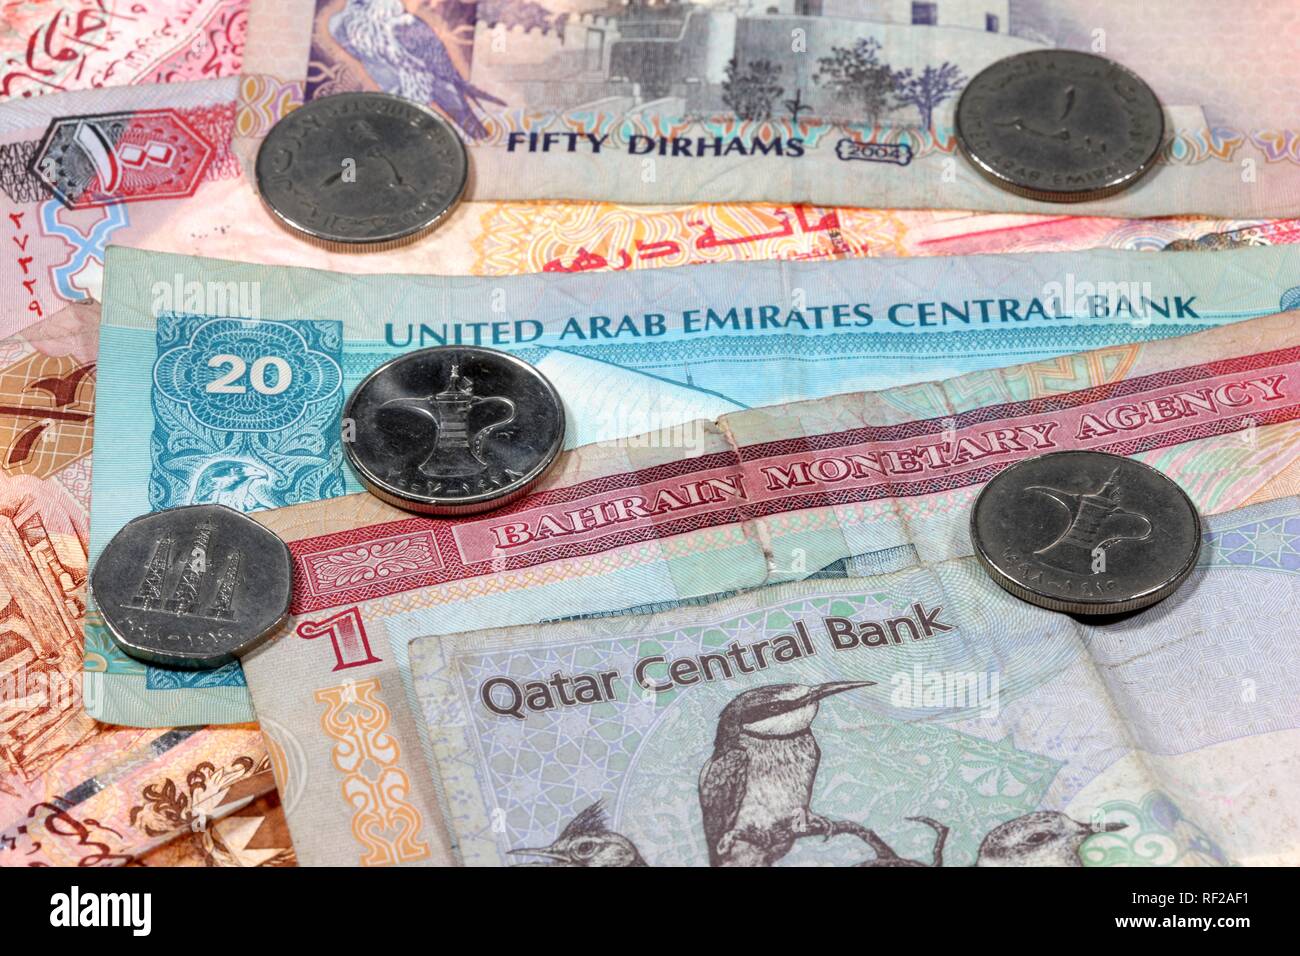 Banknoten und Münzen: Währung von Katar Riyal, Qualitätssicherung, Bahrain Dinar, BHD, und den Vereinigten Arabischen Emiraten oder UAE Dirham, AED Stockfoto